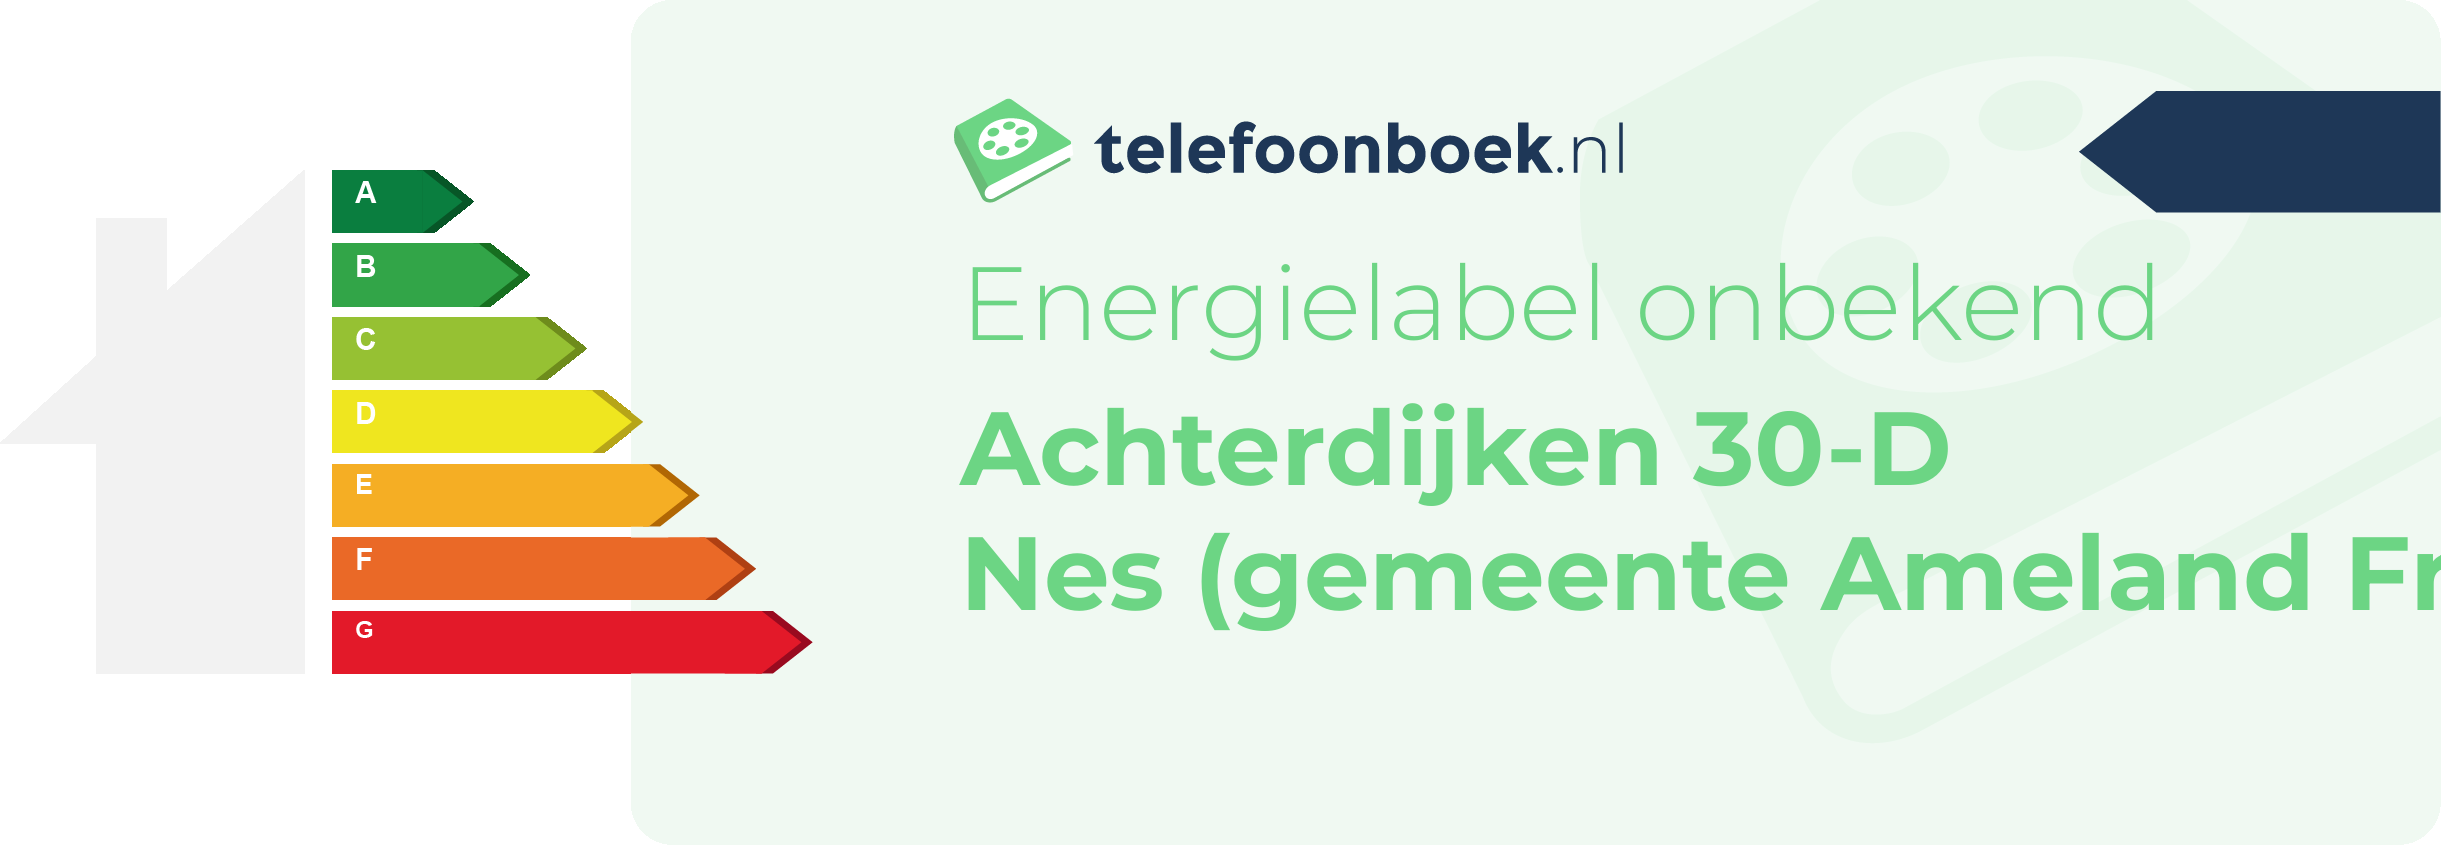 Energielabel Achterdijken 30-D Nes (gemeente Ameland Friesland)